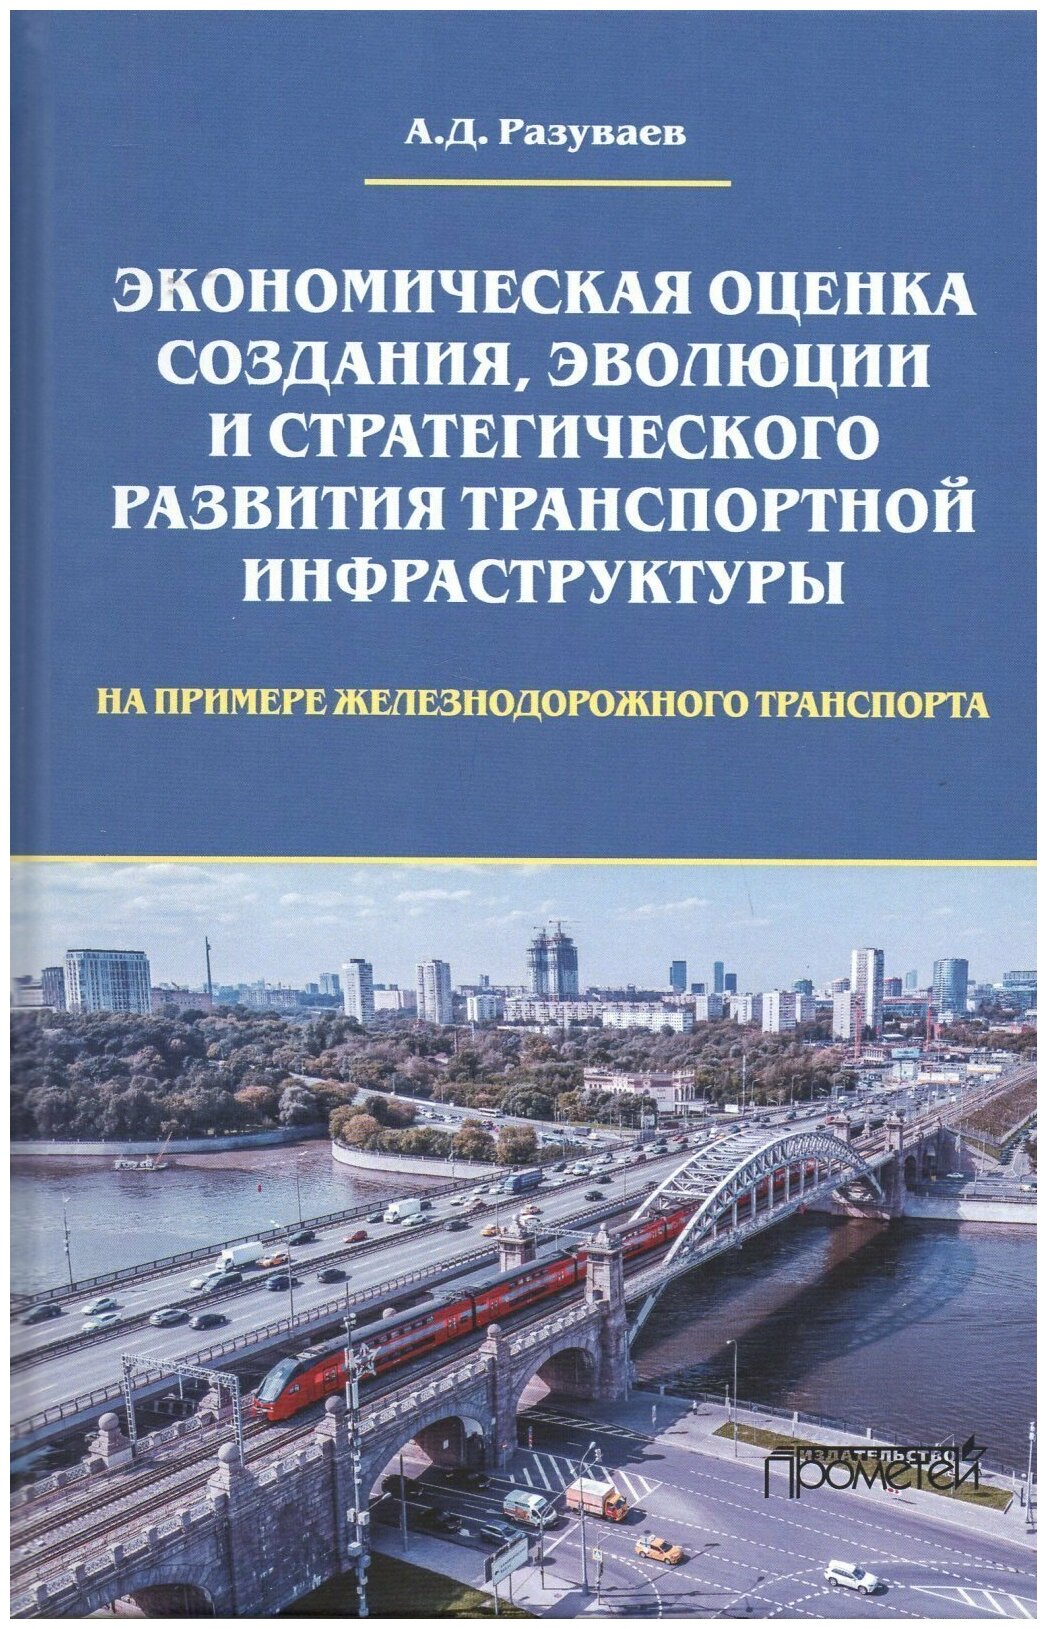 Экономическая оценка создания, эволюции и стратегического развития транспортной инфраструктуры (на примере железнодорожного транспорта): Монография